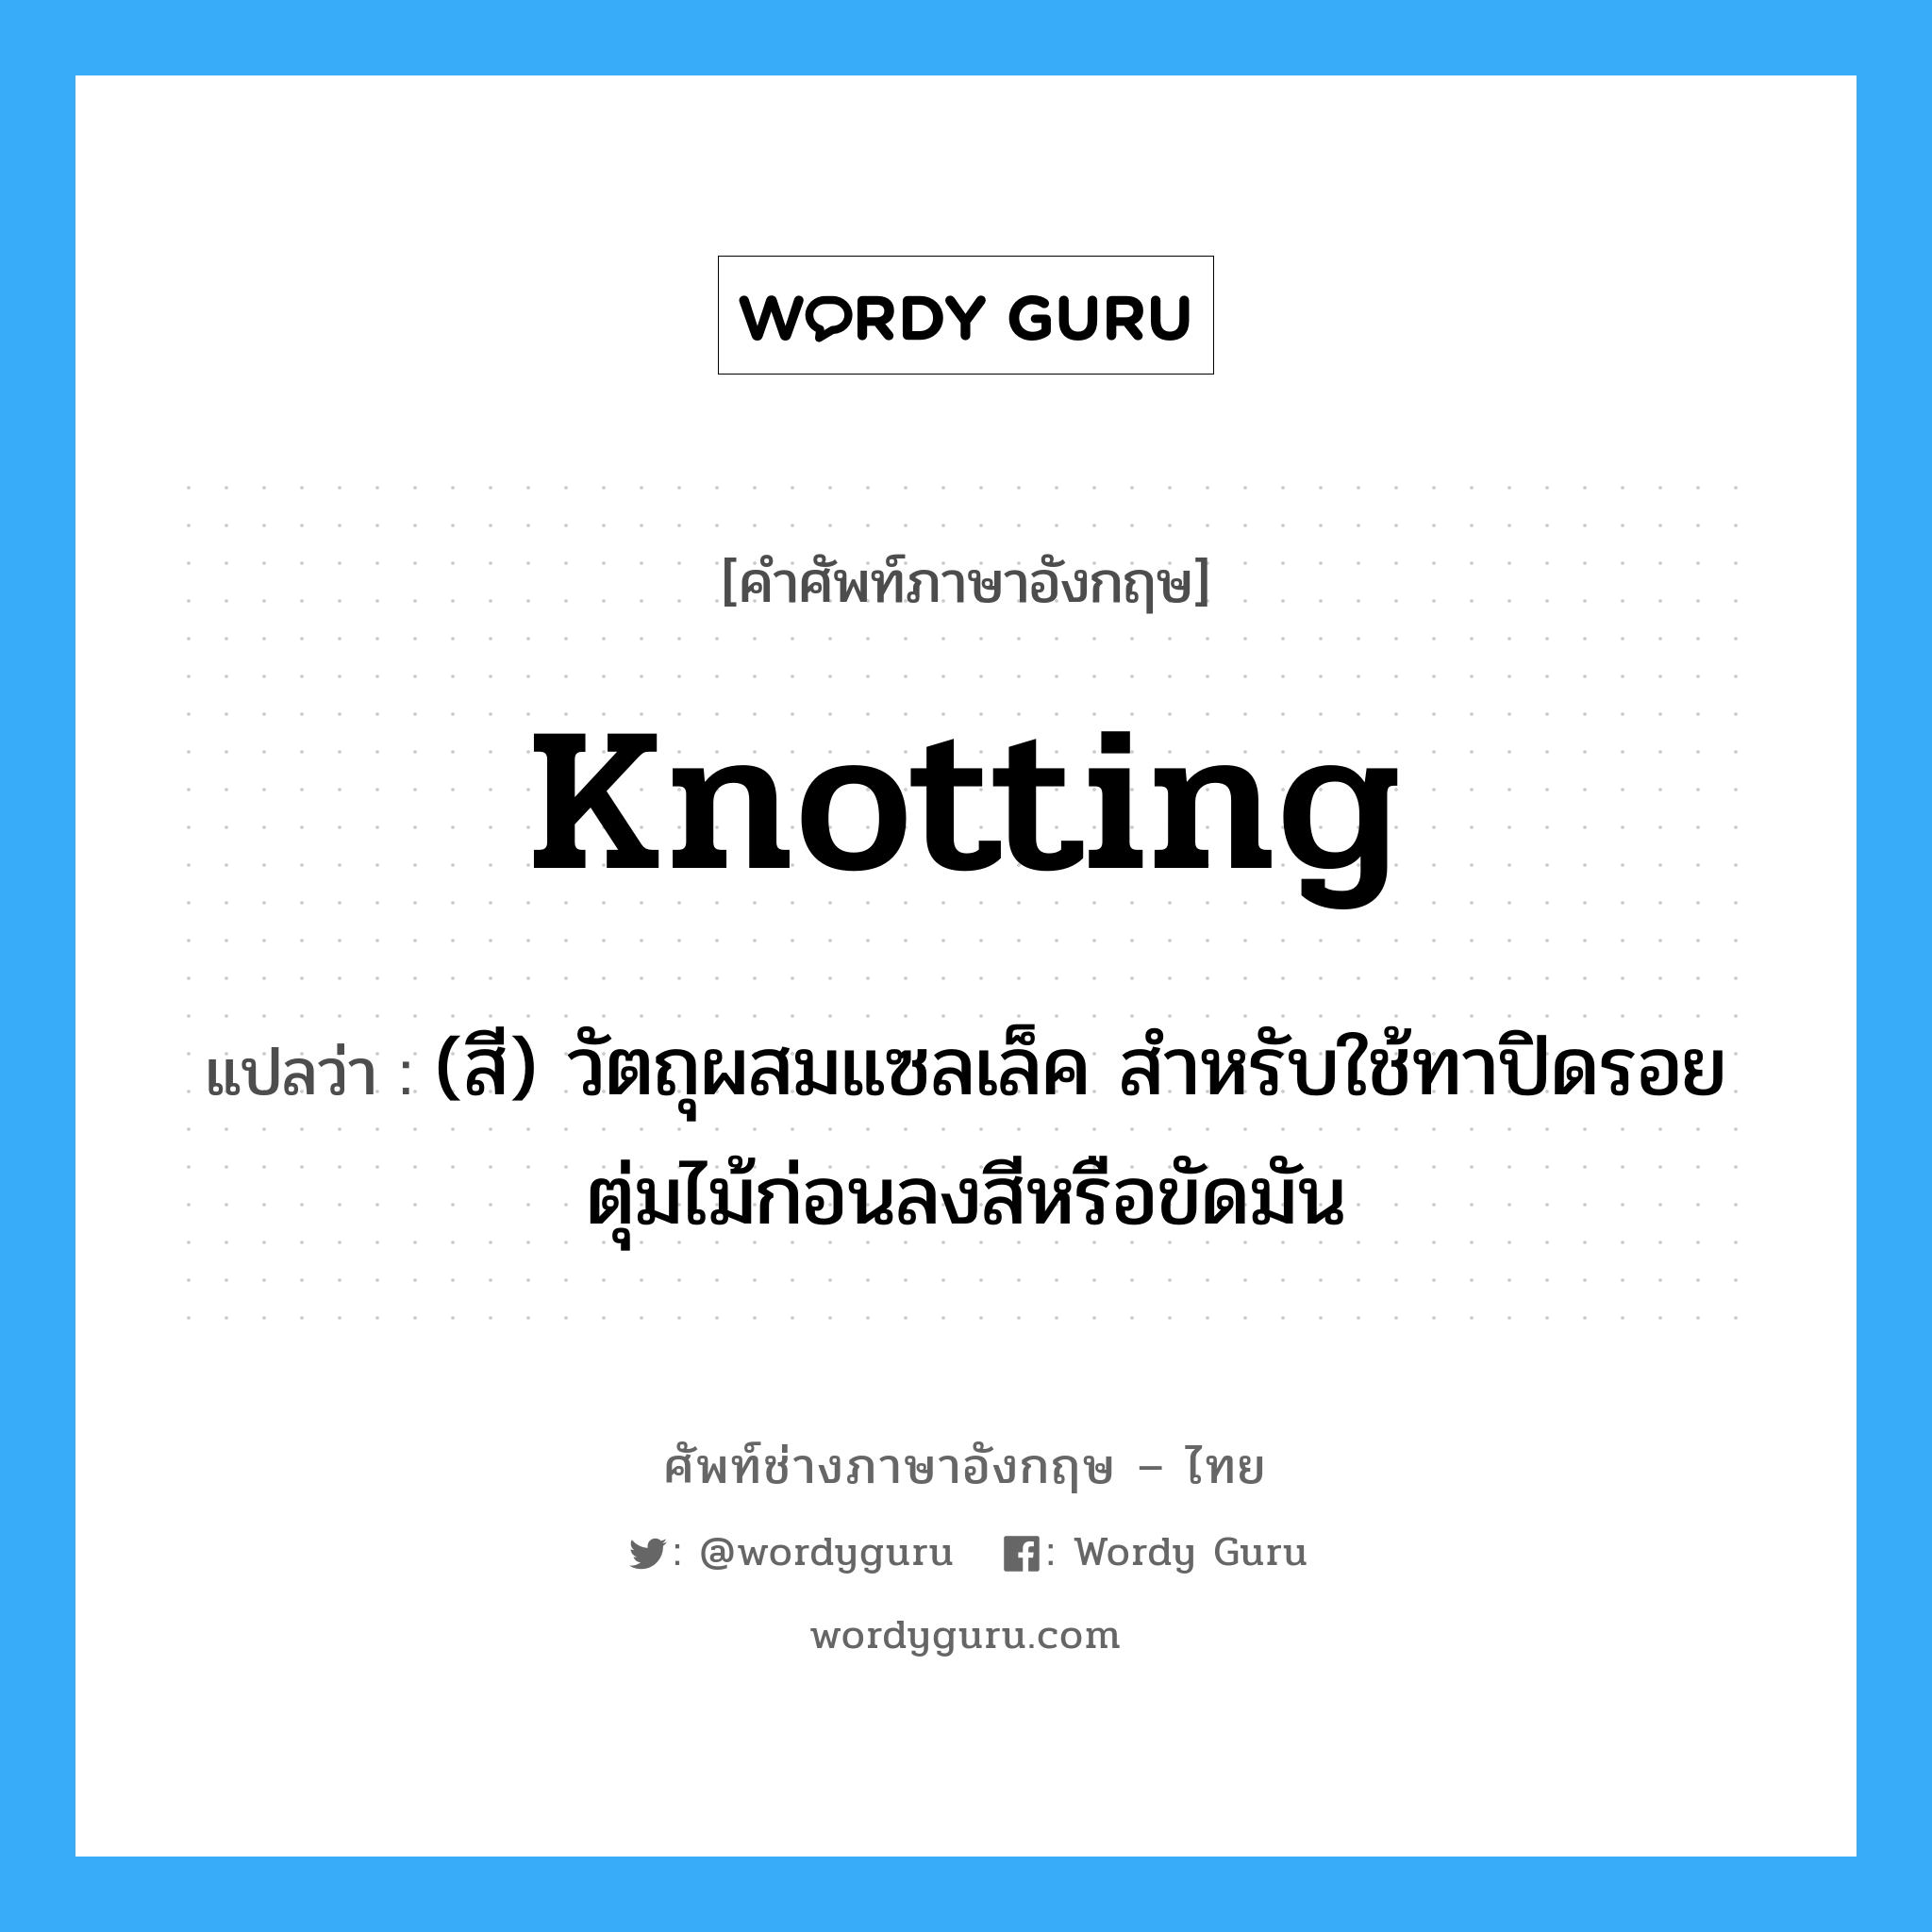 knotting แปลว่า?, คำศัพท์ช่างภาษาอังกฤษ - ไทย knotting คำศัพท์ภาษาอังกฤษ knotting แปลว่า (สี) วัตถุผสมแซลเล็ค สำหรับใช้ทาปิดรอยตุ่มไม้ก่อนลงสีหรือขัดมัน